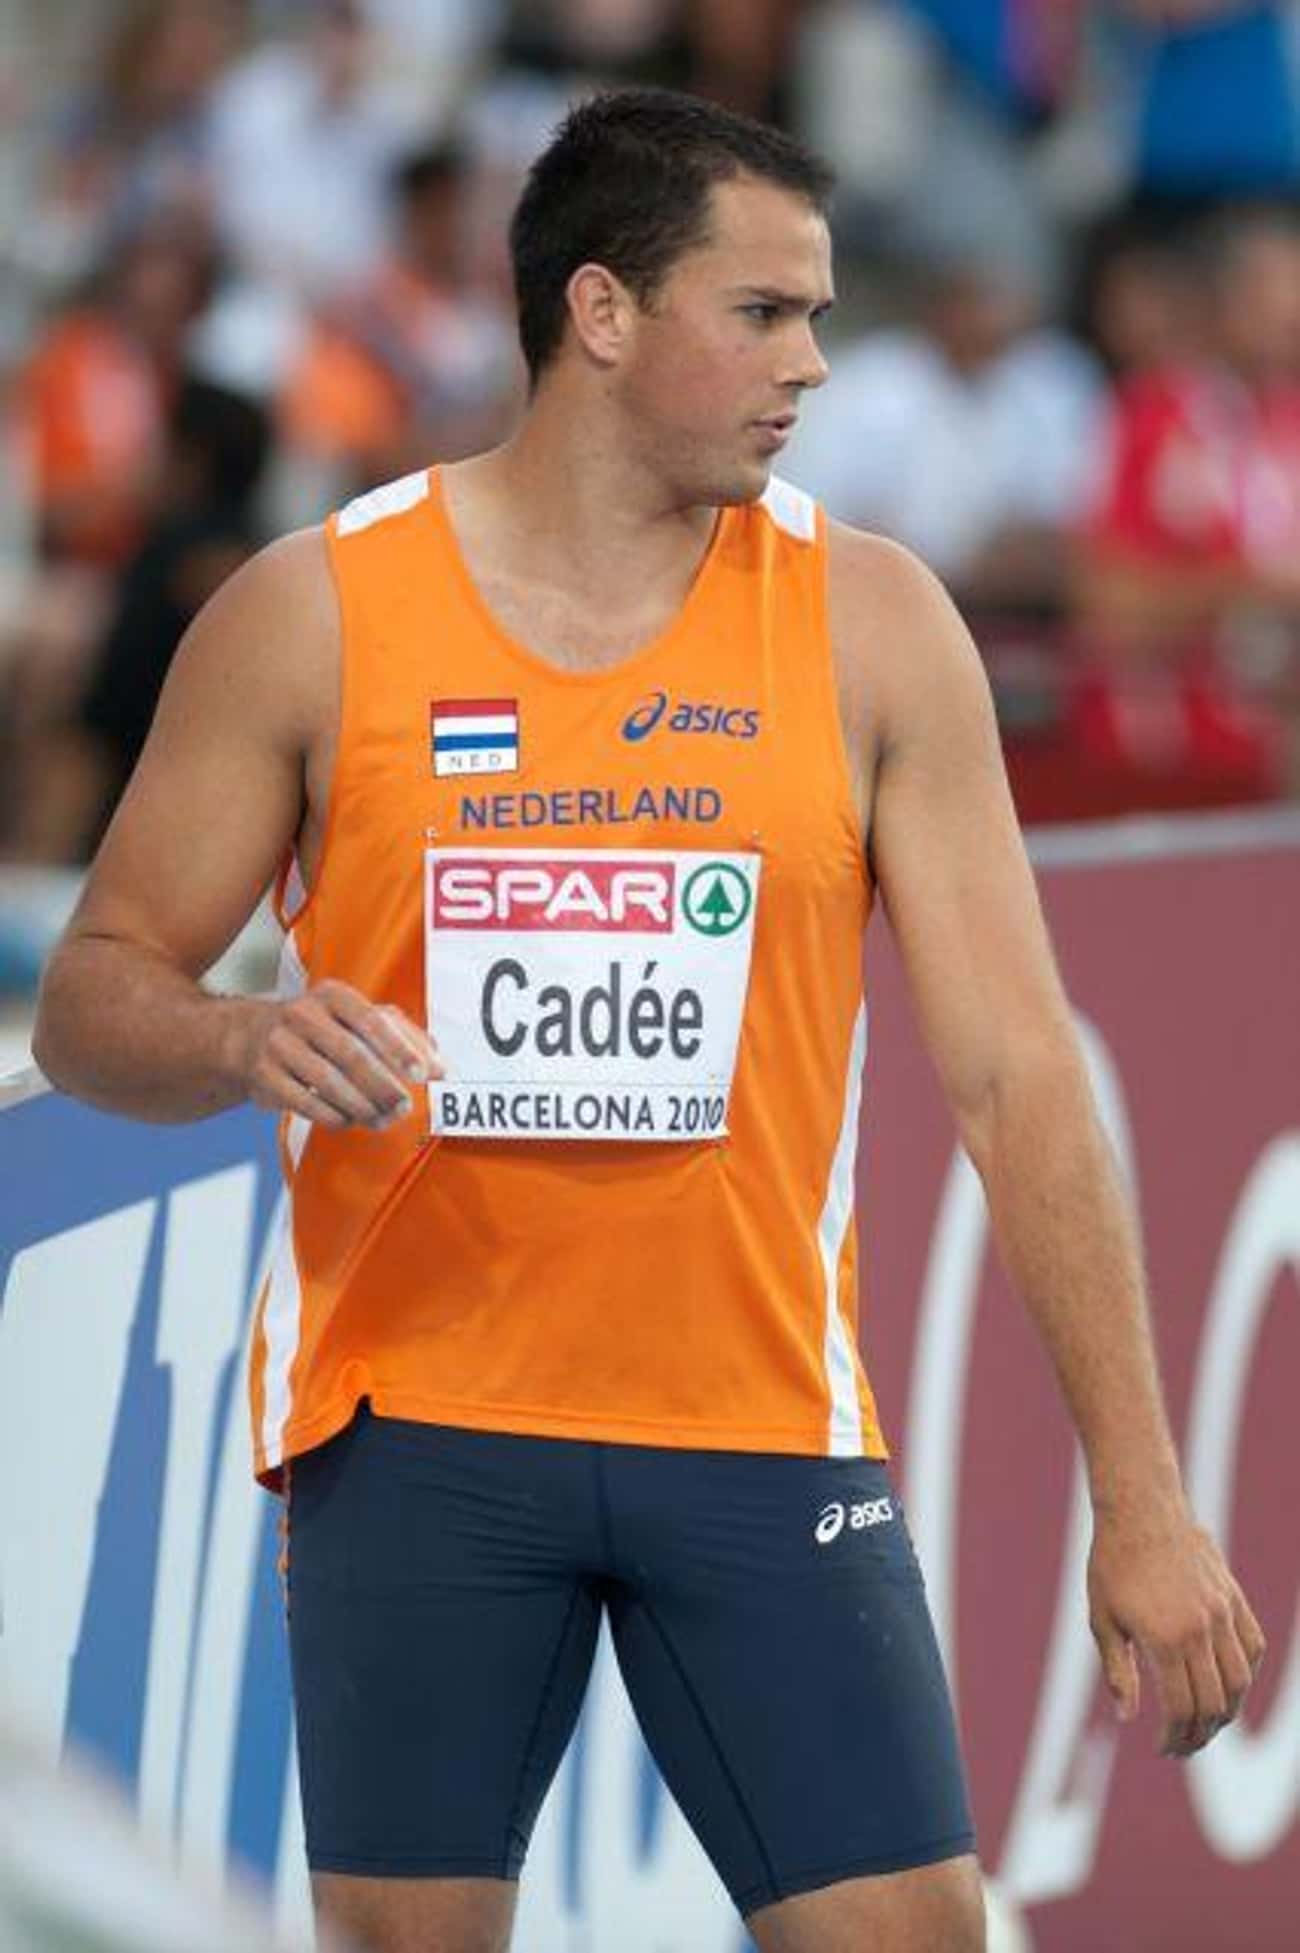 Erik Cadée